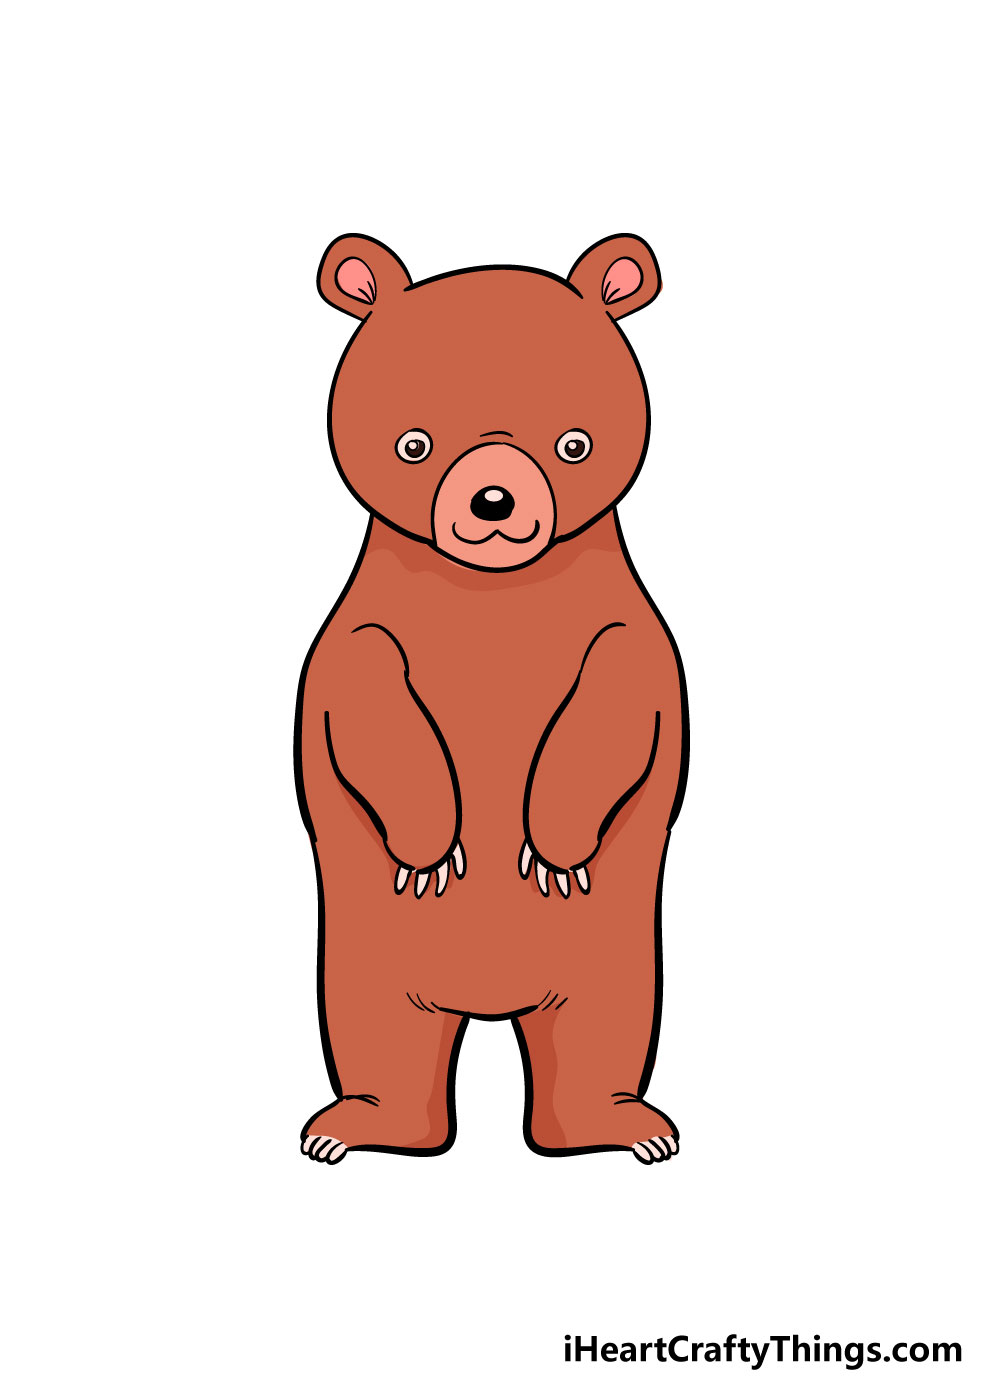 10 Cách Vẽ Chú Gấu Đơn Giản Mà Đẹp Rất Sinh Động Dành Cho Bé